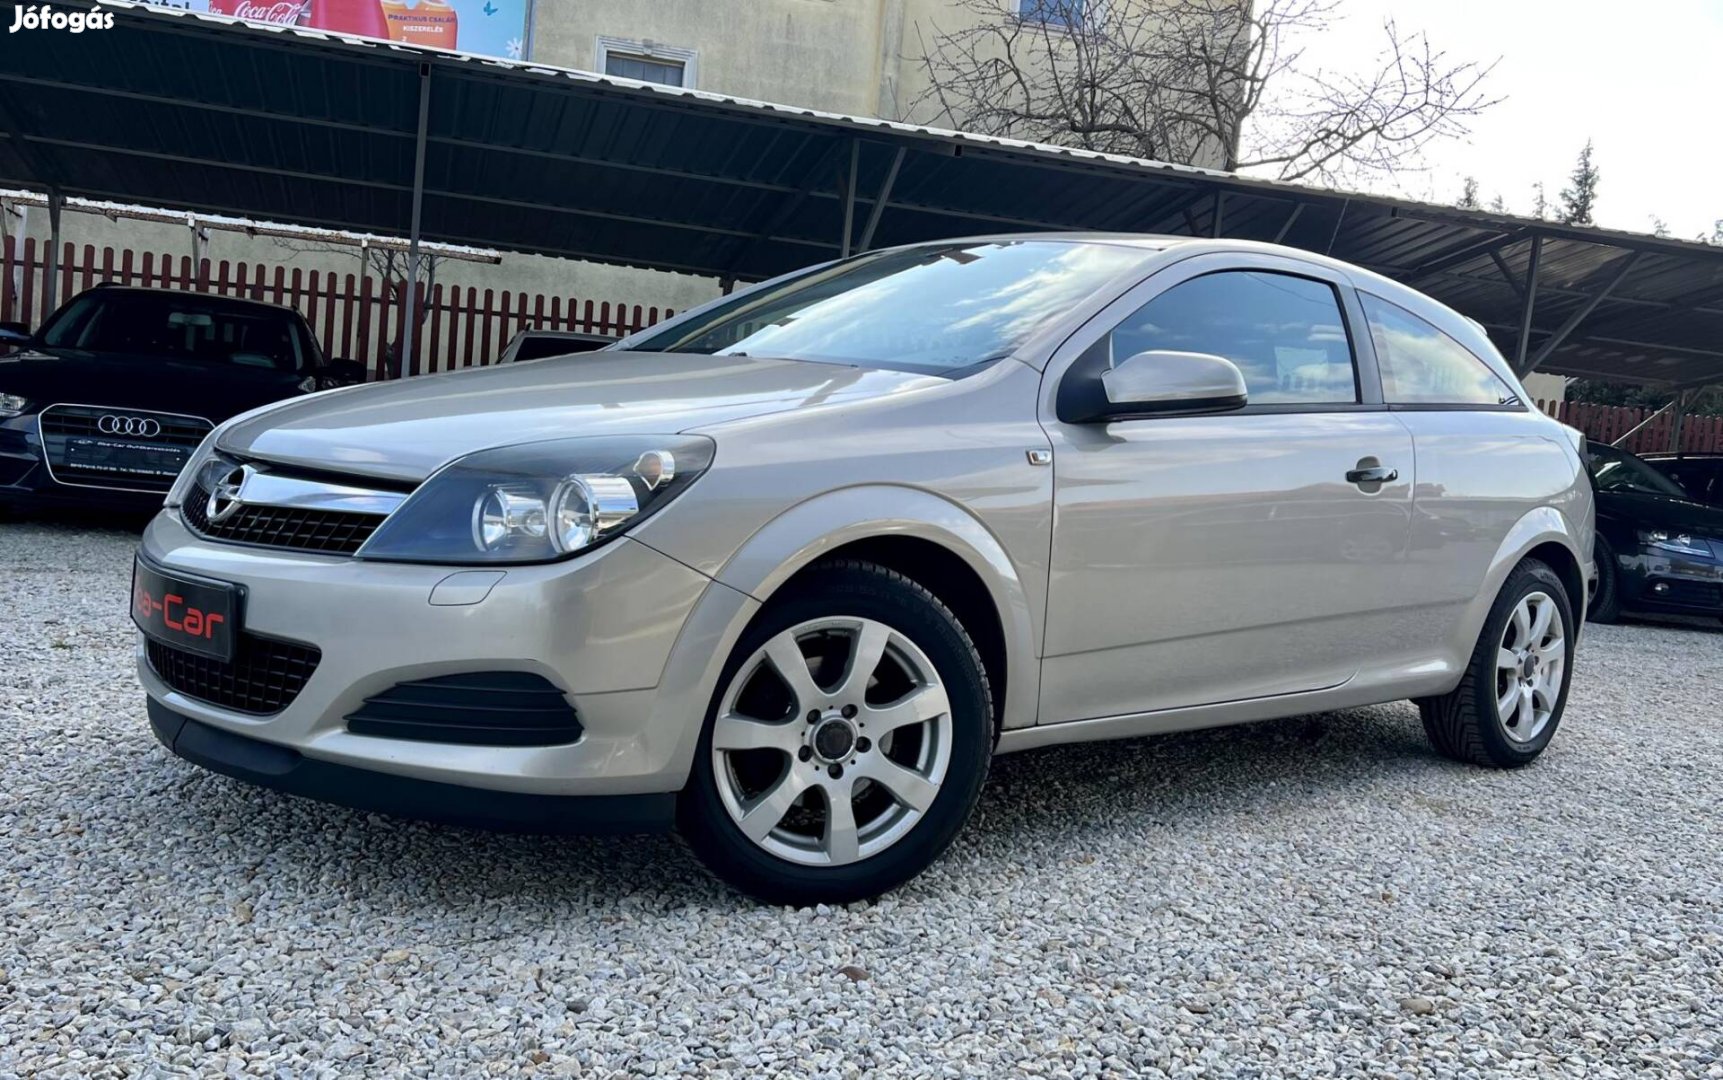 Opel Astra H 1.6 GTC Enjoy Foglalózva!Szép Álla...